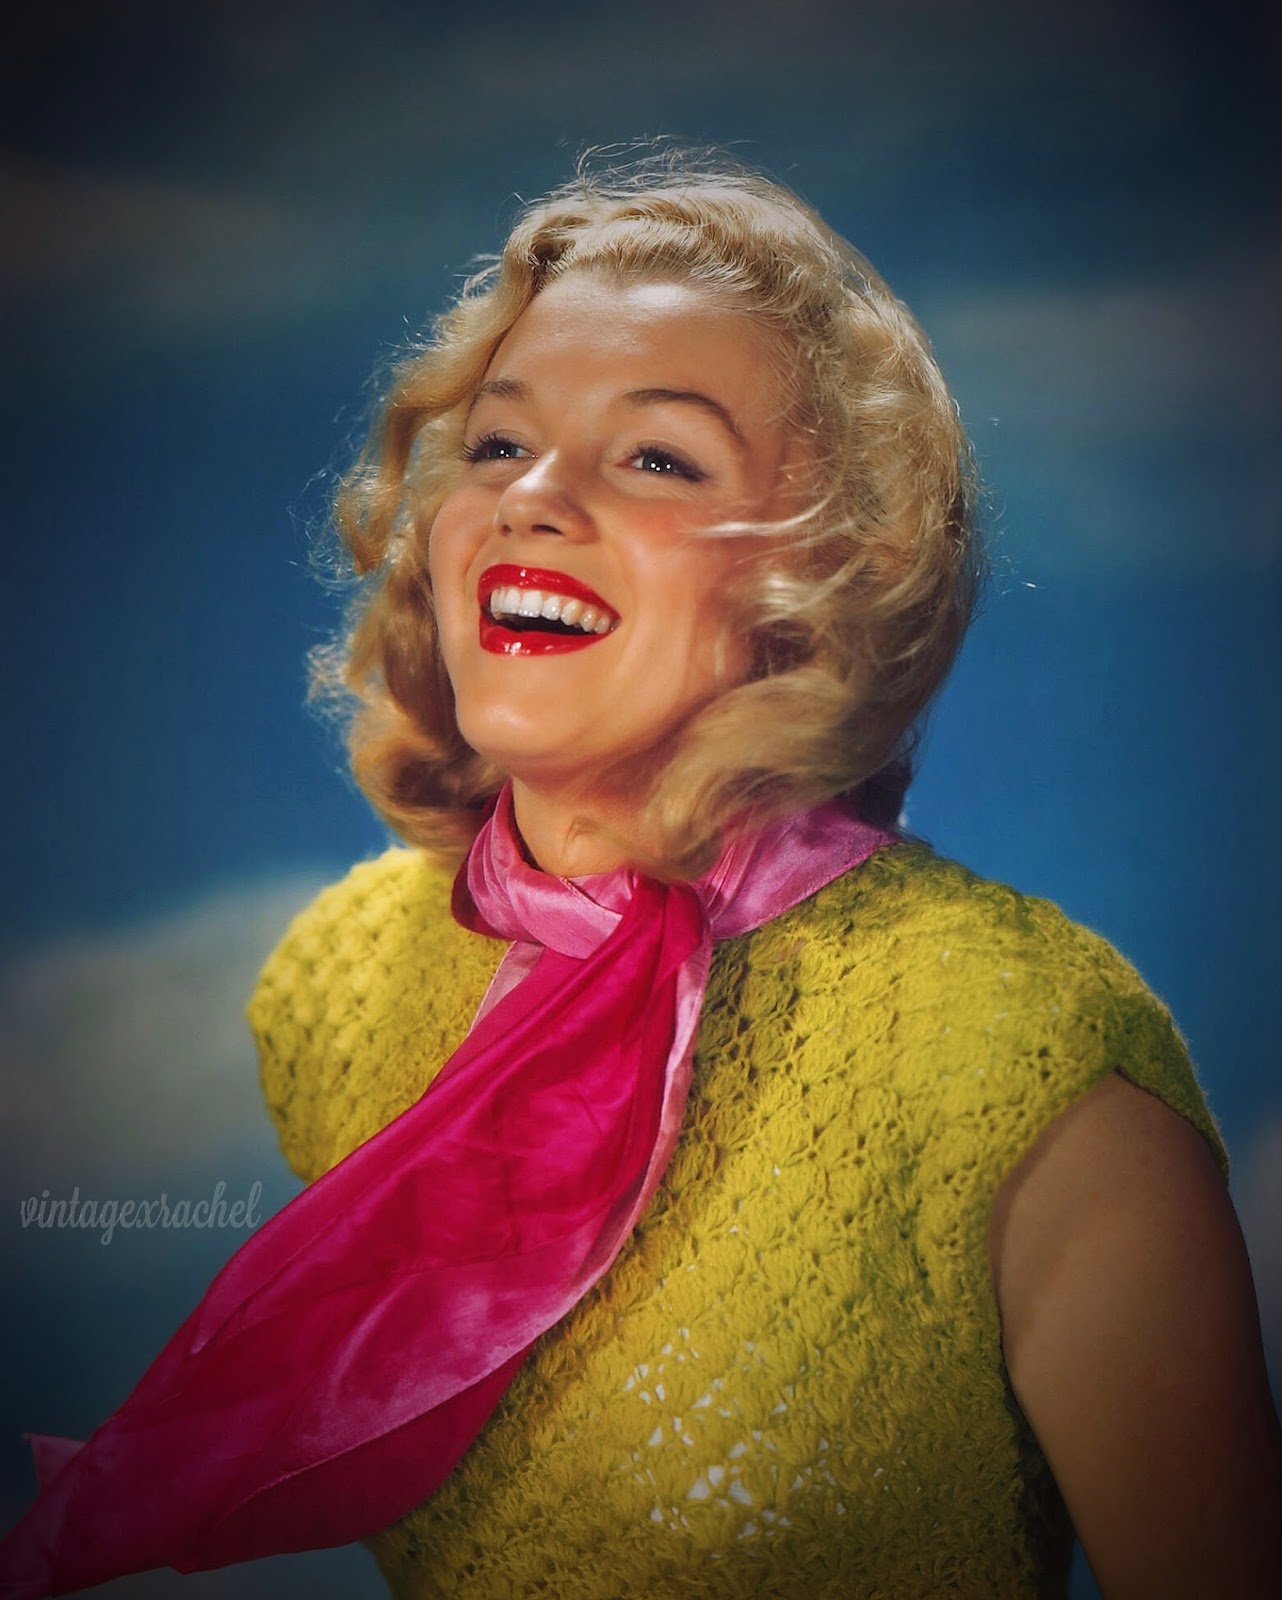 Vintage Rachel: Remembering Marilyn